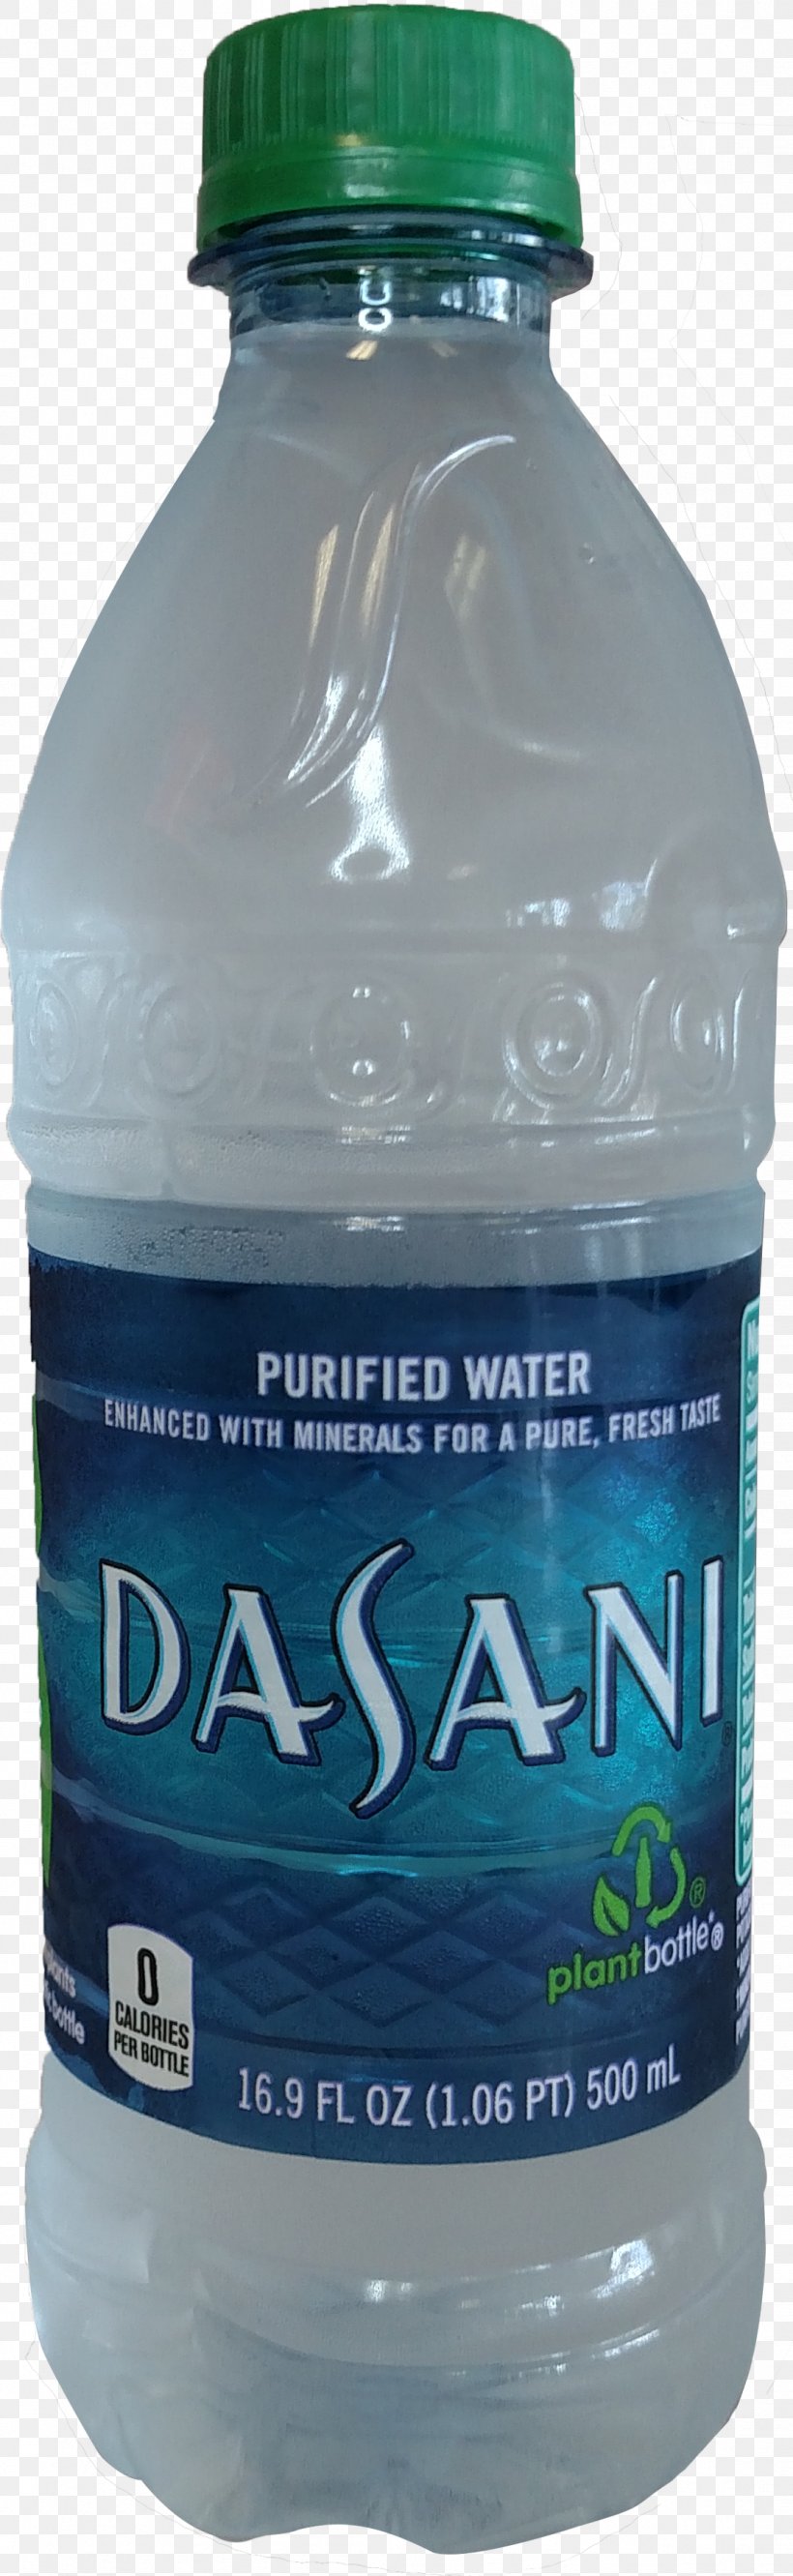 Water Bottles Bottled Water Dasani, PNG, 1104x3586px, Water Bottles, Bottle, Bottled Water, Dasani, Distilled Water Download Free